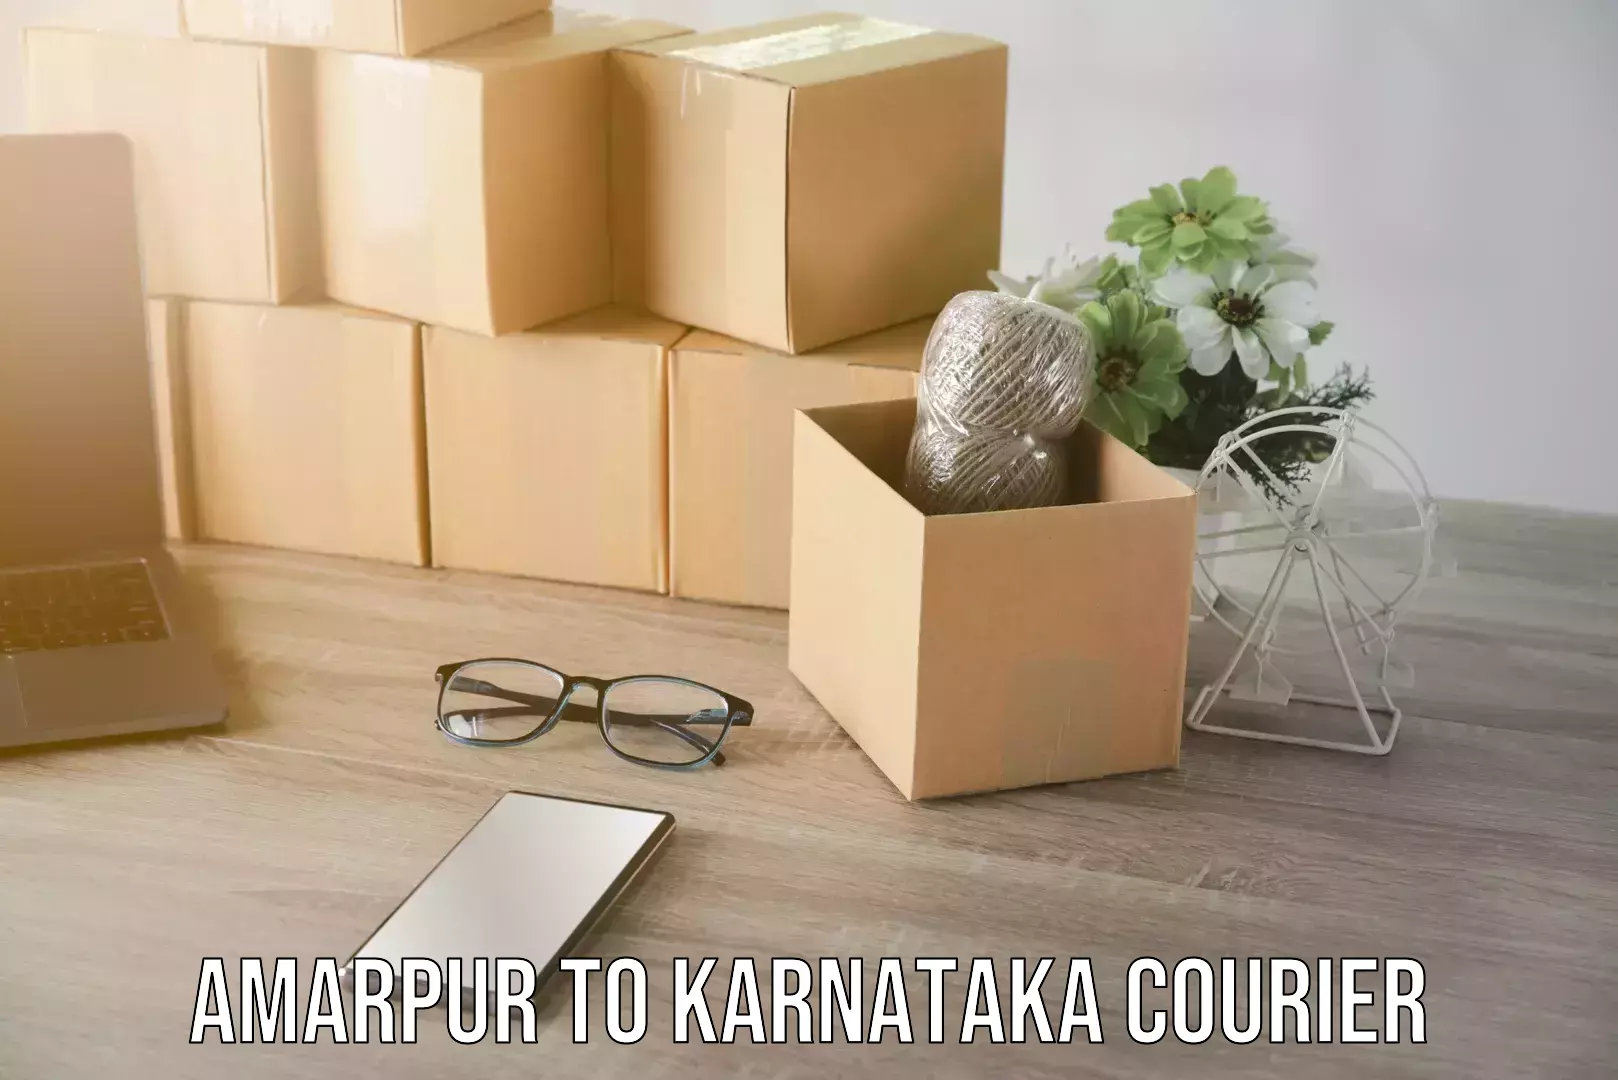 Efficient cargo services Amarpur to Karnataka